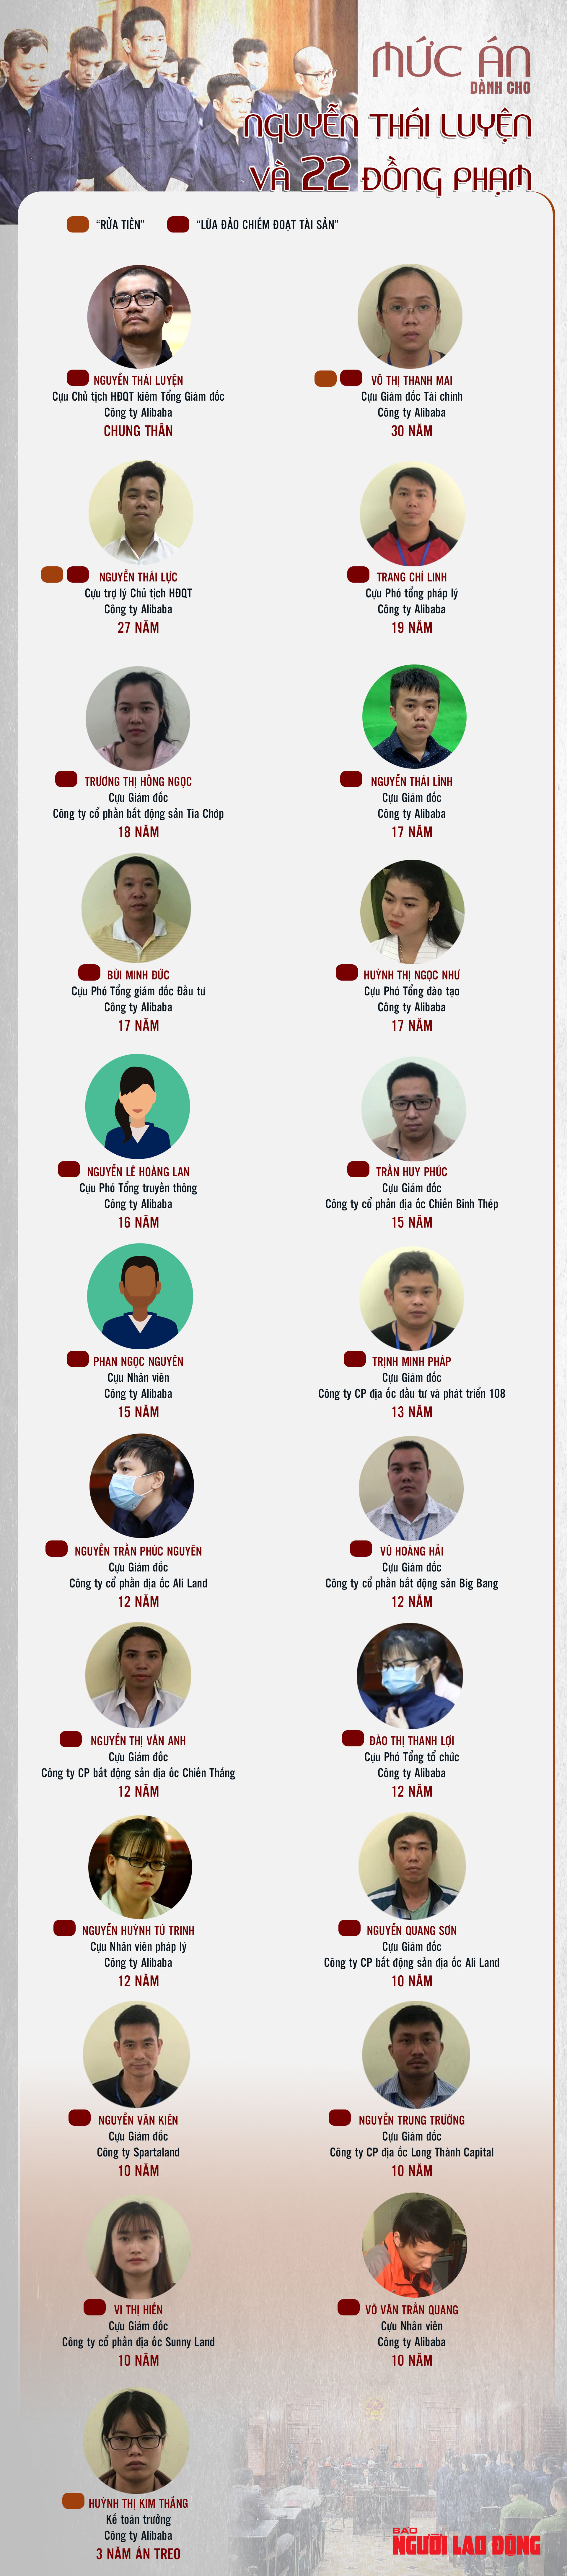 [Infographic]Chi tiết mức án dành cho Nguyễn Thái Luyện và 22 đồng phạm - 1